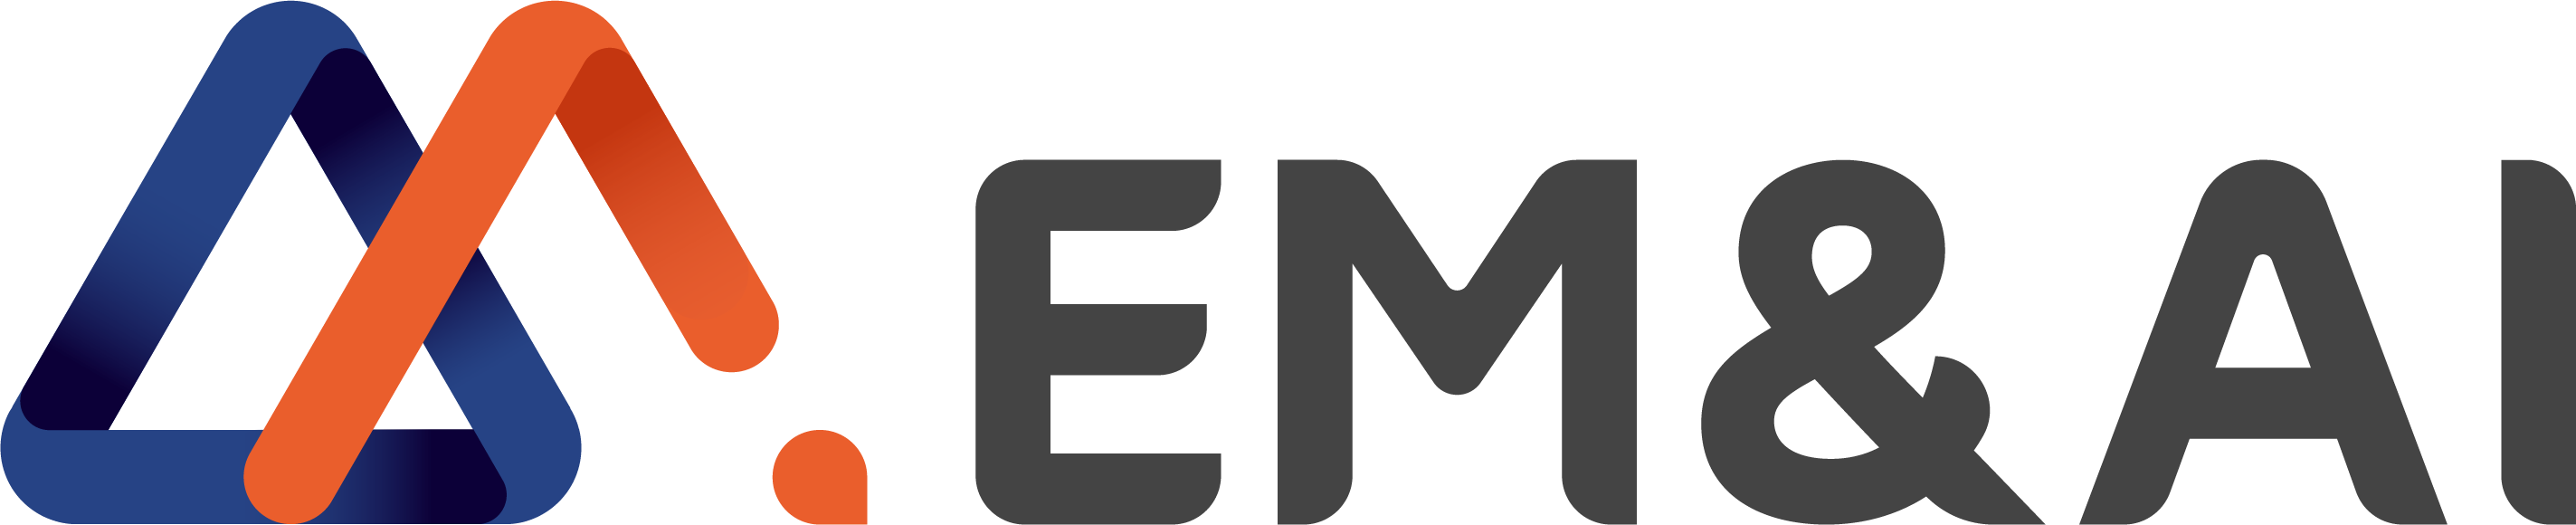 EM&AI-logo-wide-bot-black